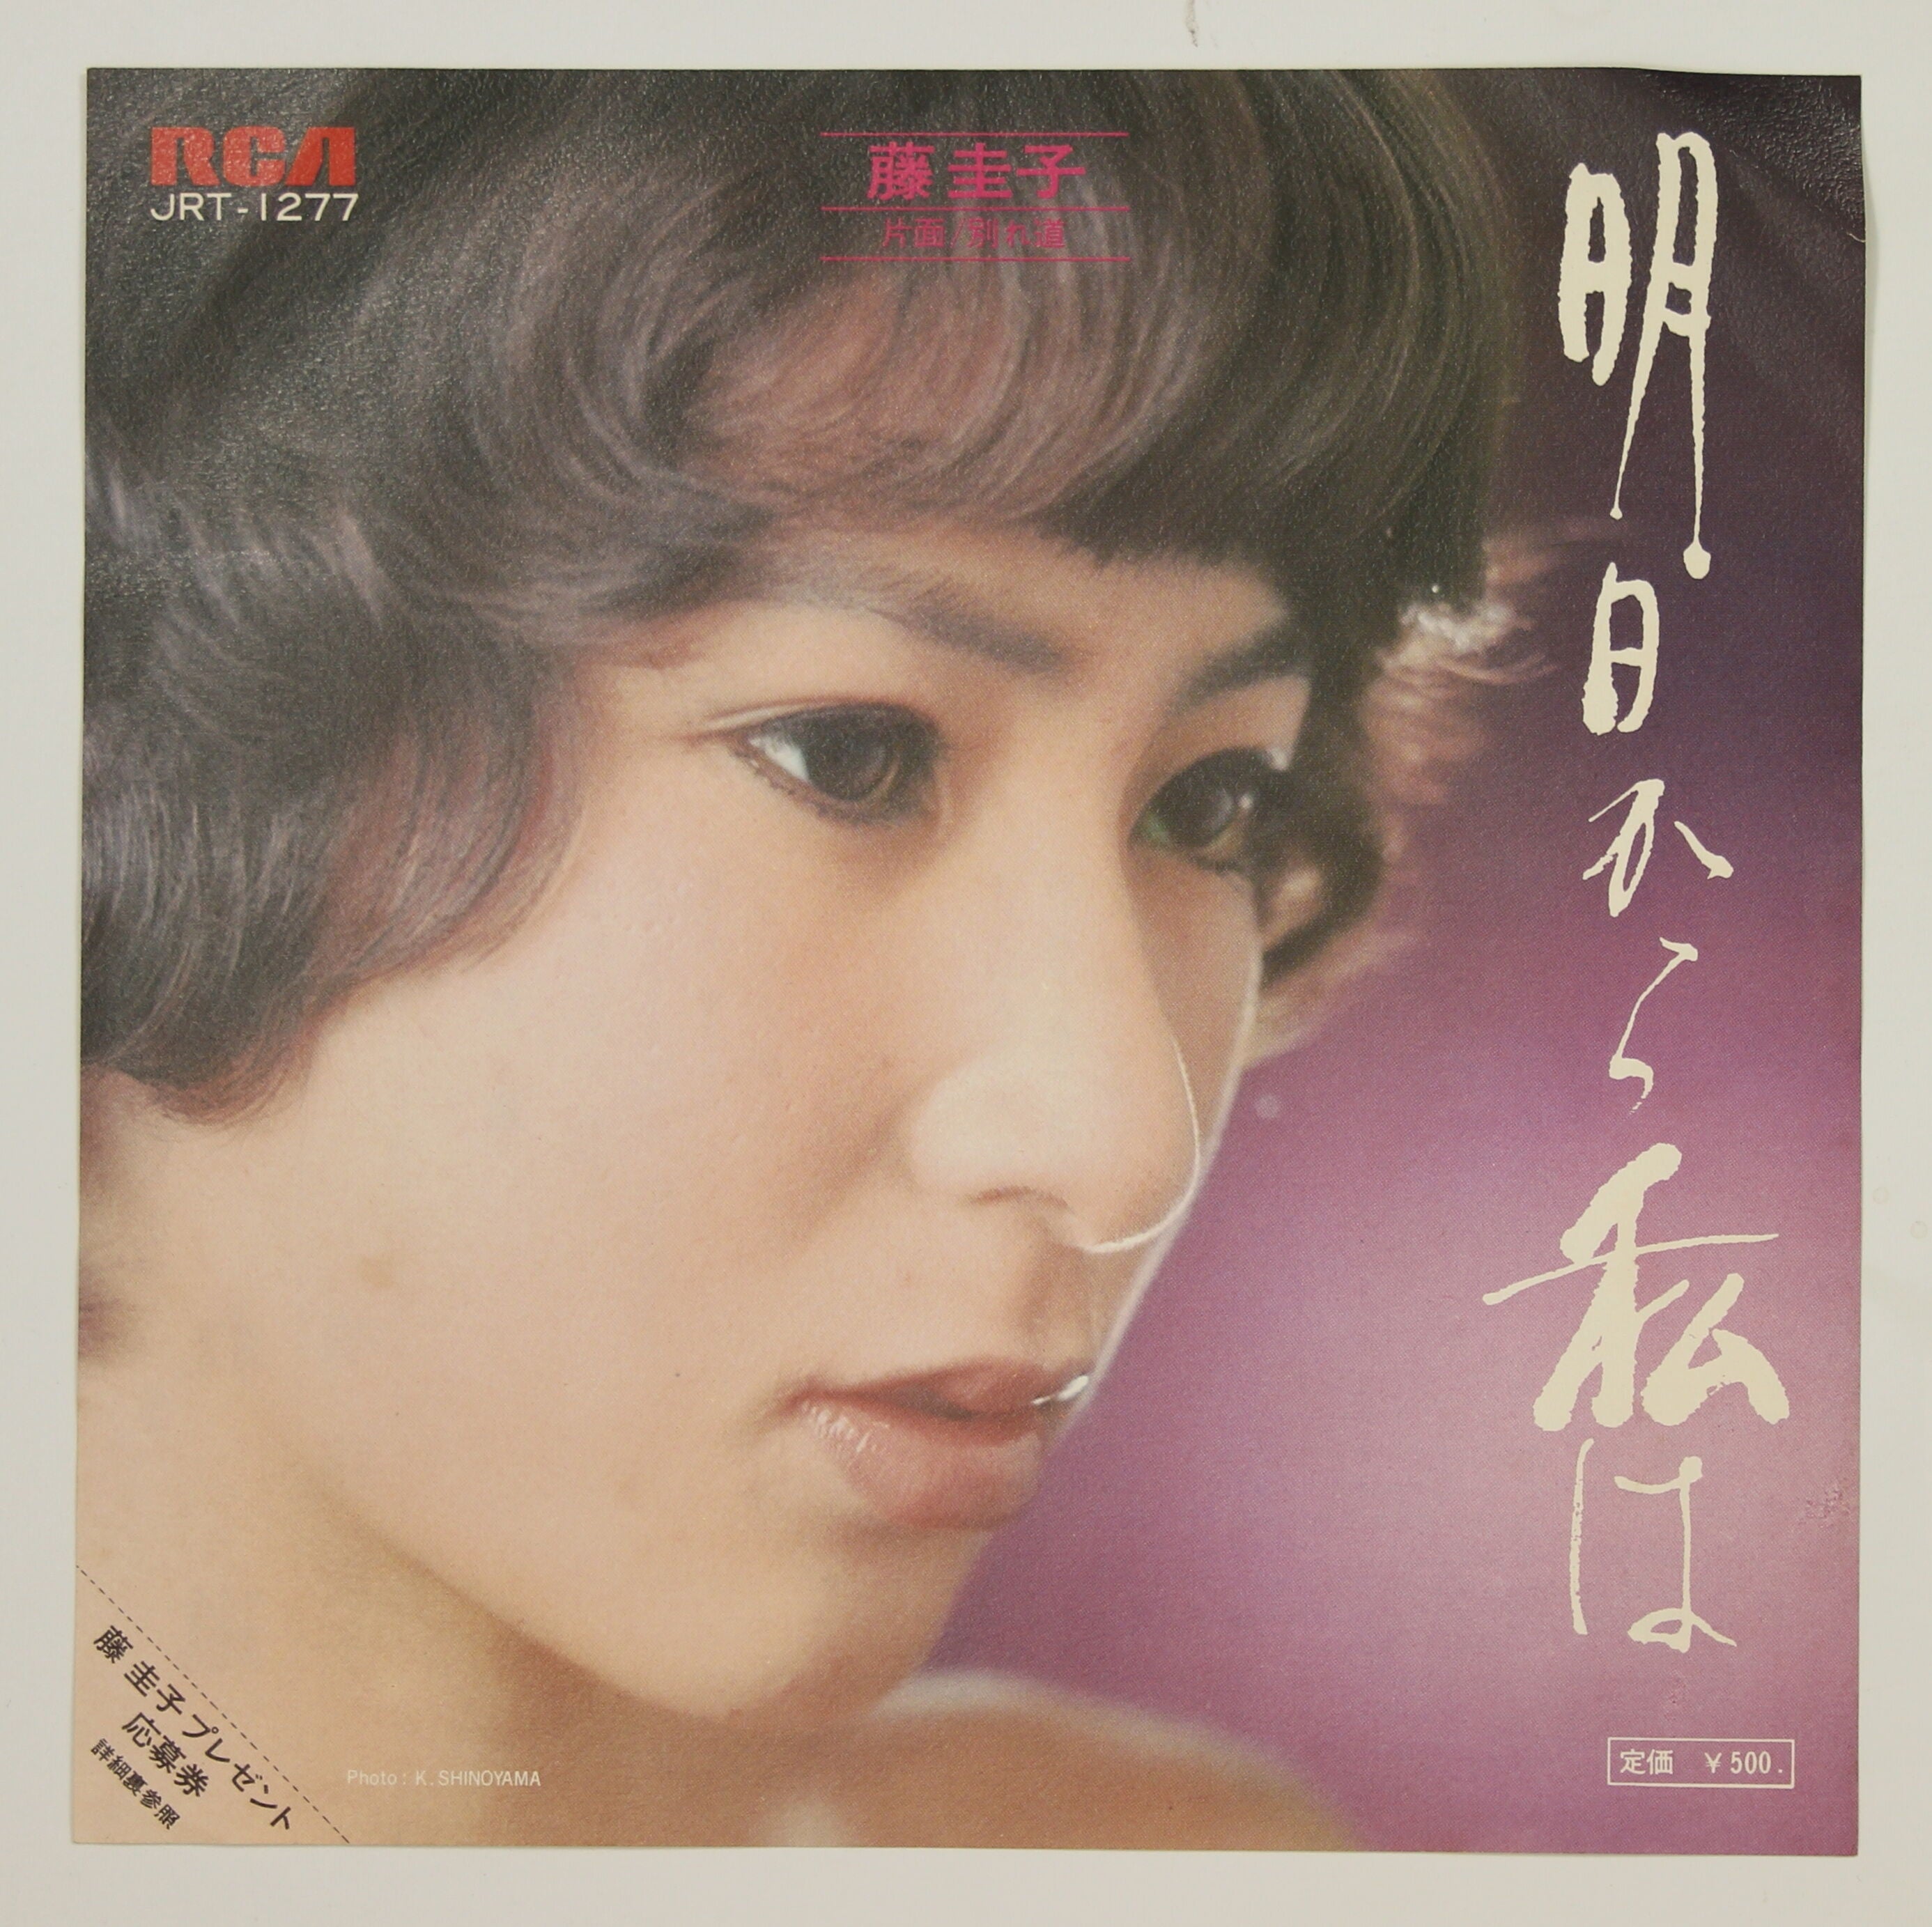 特注生産 藤圭子、さん、レコード、ドナツ、45. - CD